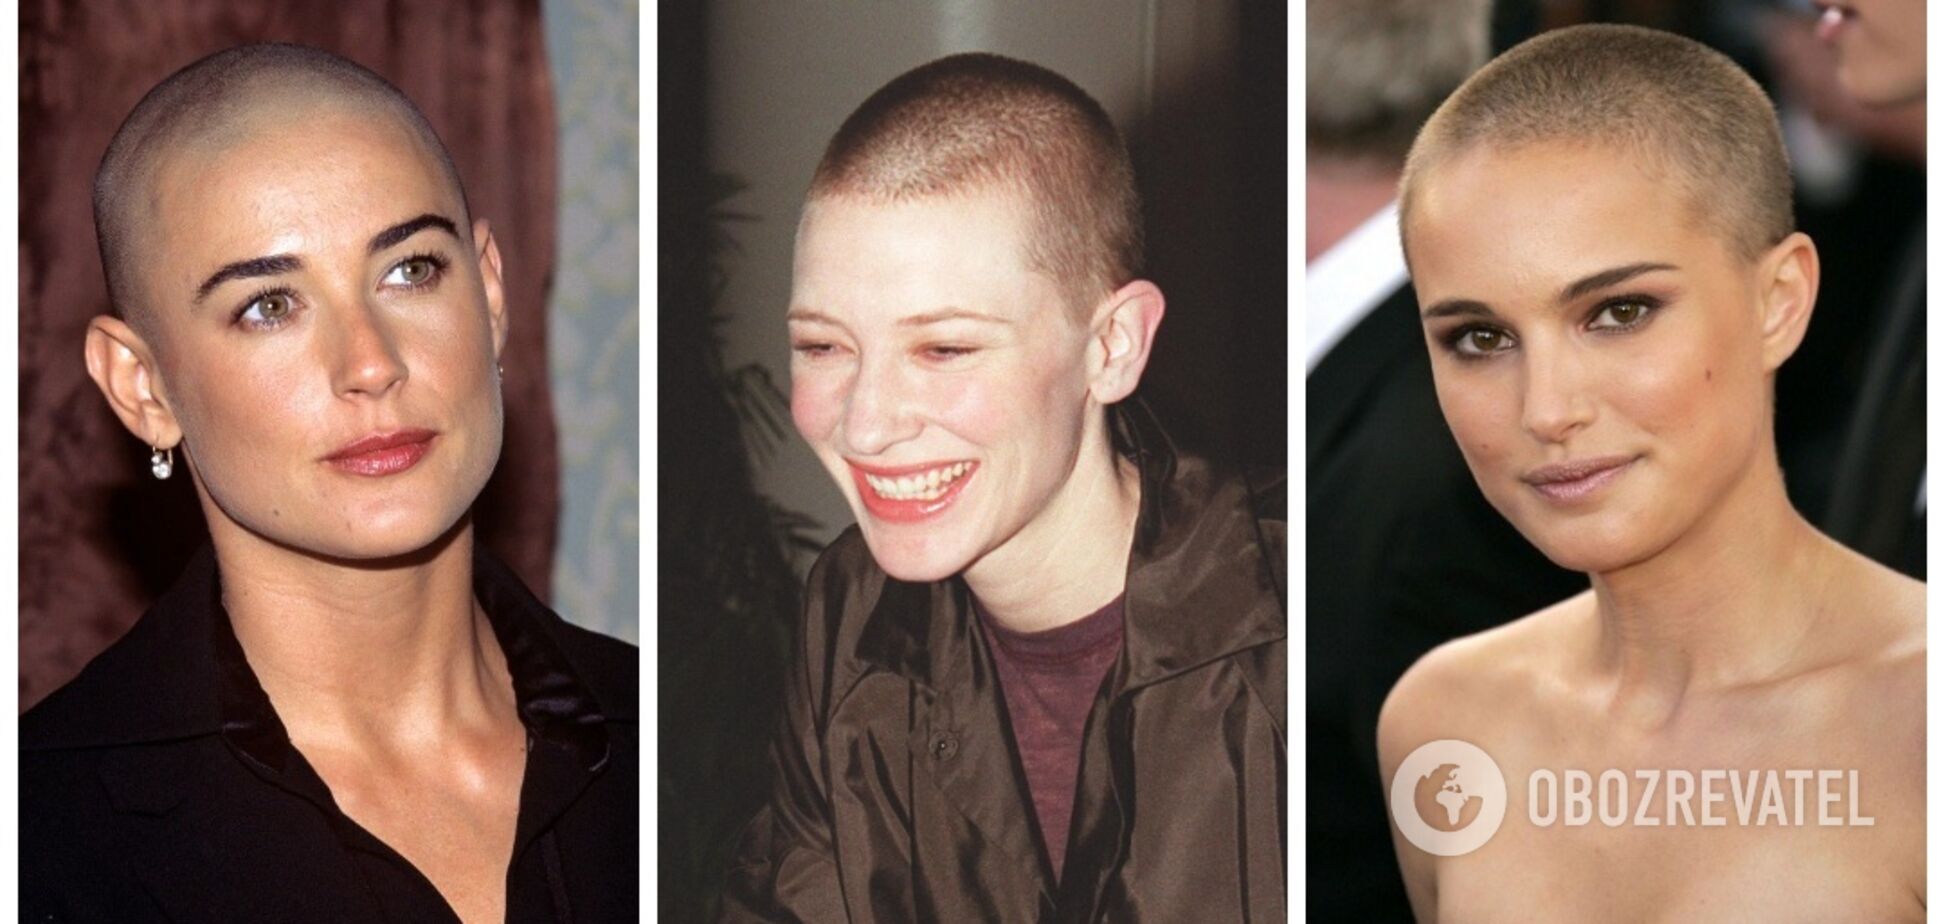 Демі Мур, Наталі Портман та інші знаменитості, які не побоялися поголити голову. Фото